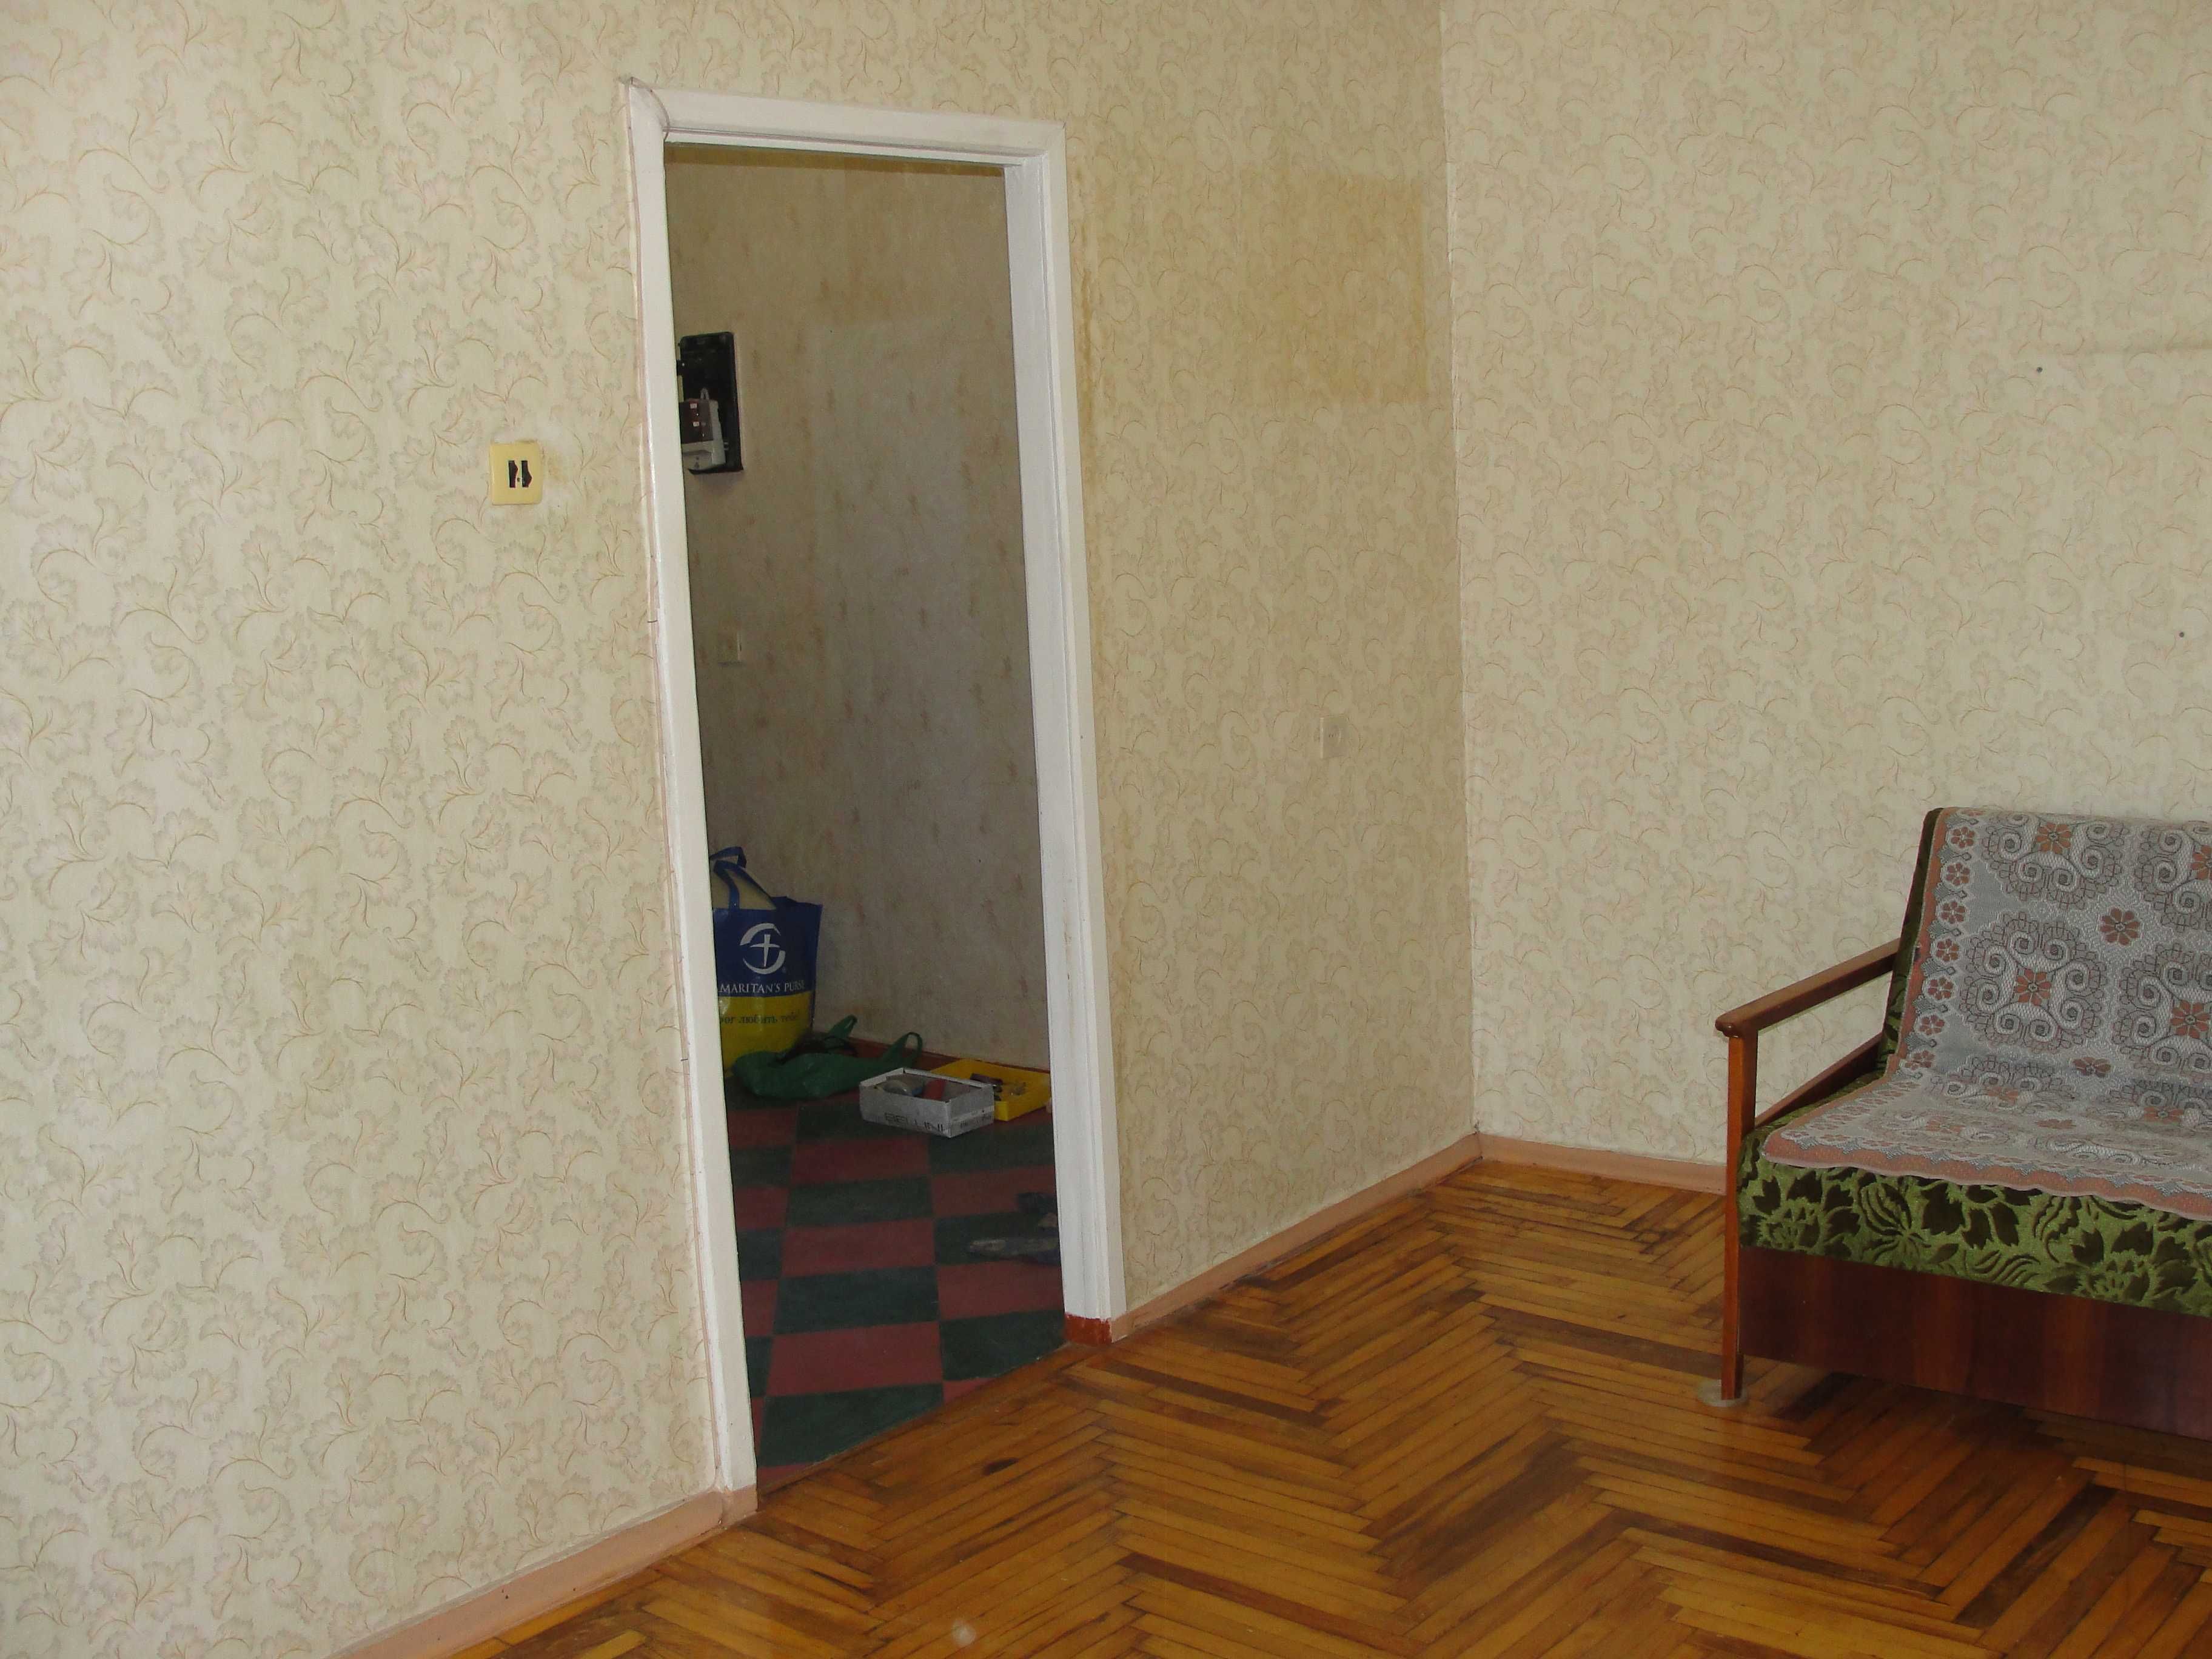 Квартира 1 комнатная на Дудыкина 15